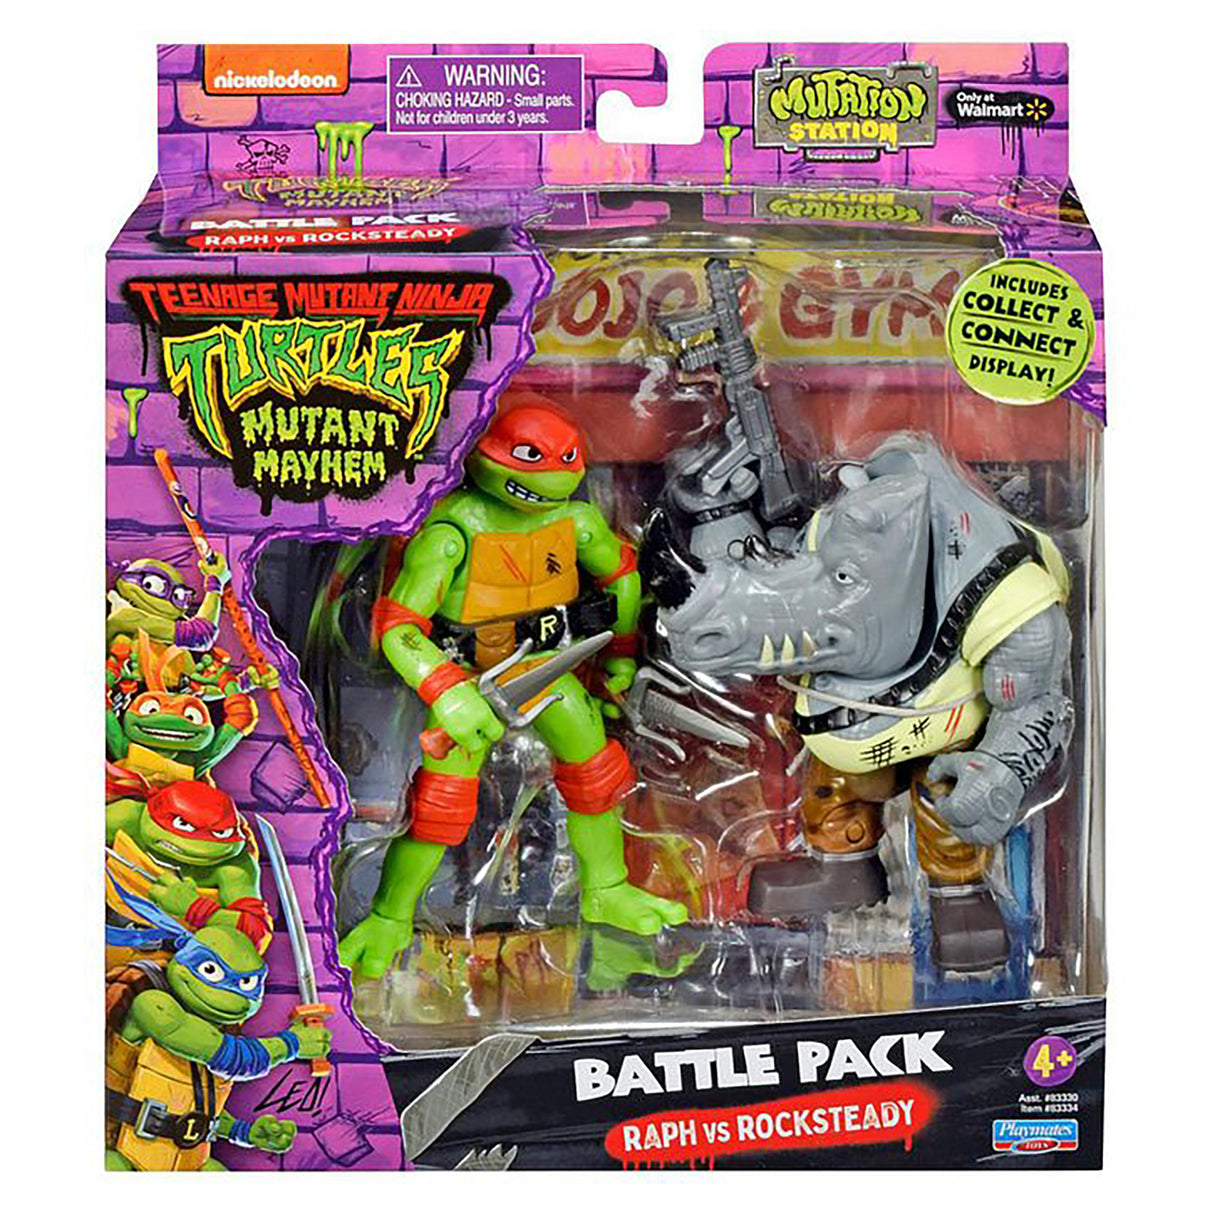 Teenage Mutant Ninja Turtles Mayhem (Good Vs. Bad) 2 Pack - Raph VS Rocksteady (Pack of 2)